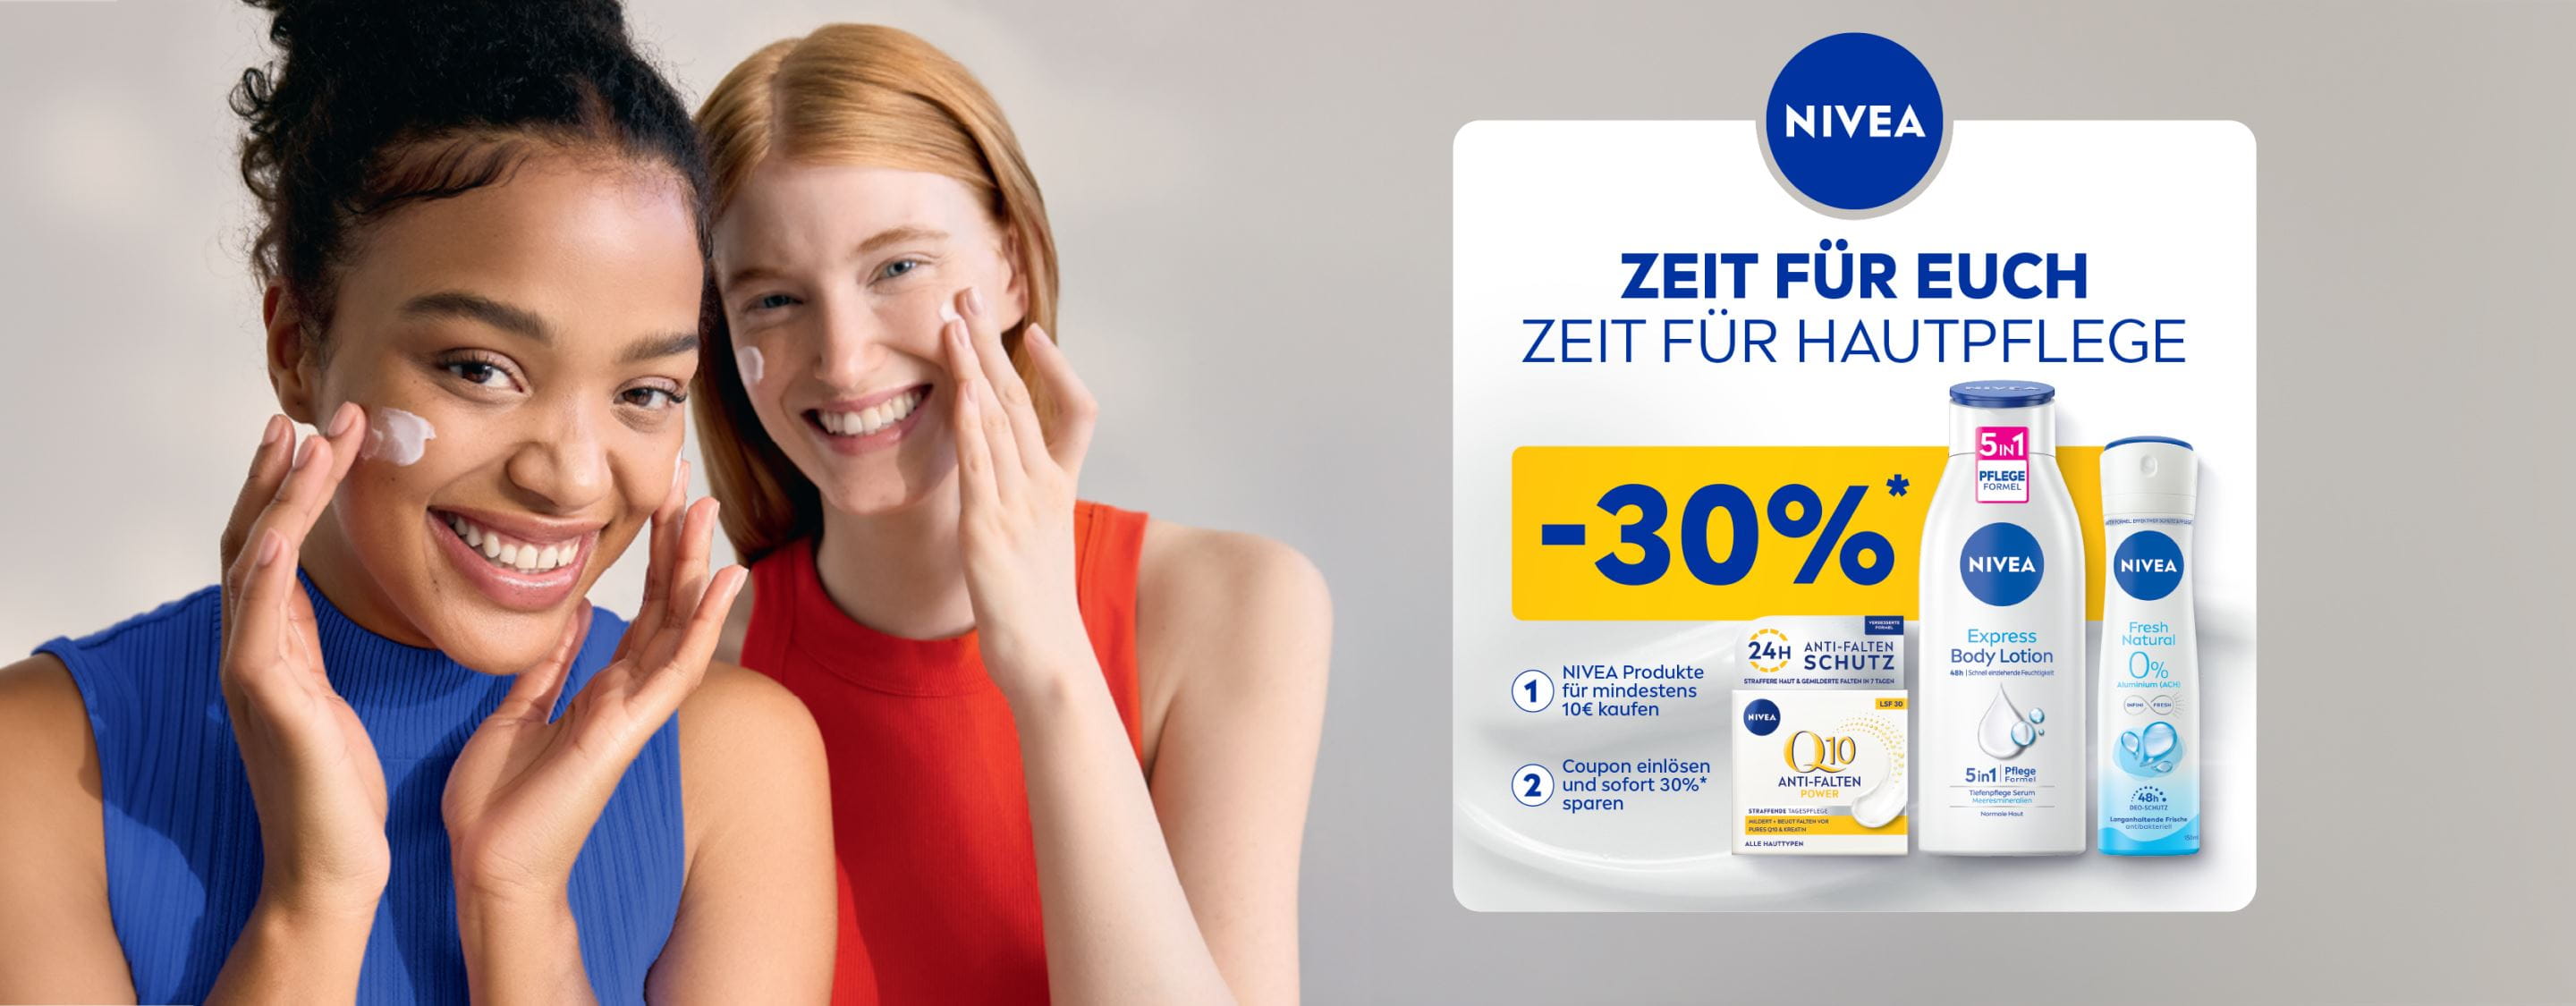 ZEIT FÜR EUCH - ZEIT FÜR HAUTPFLEGE - 30% Rabatt* bei Kauf von NIVEA Produkten für mindestens 10 Euro